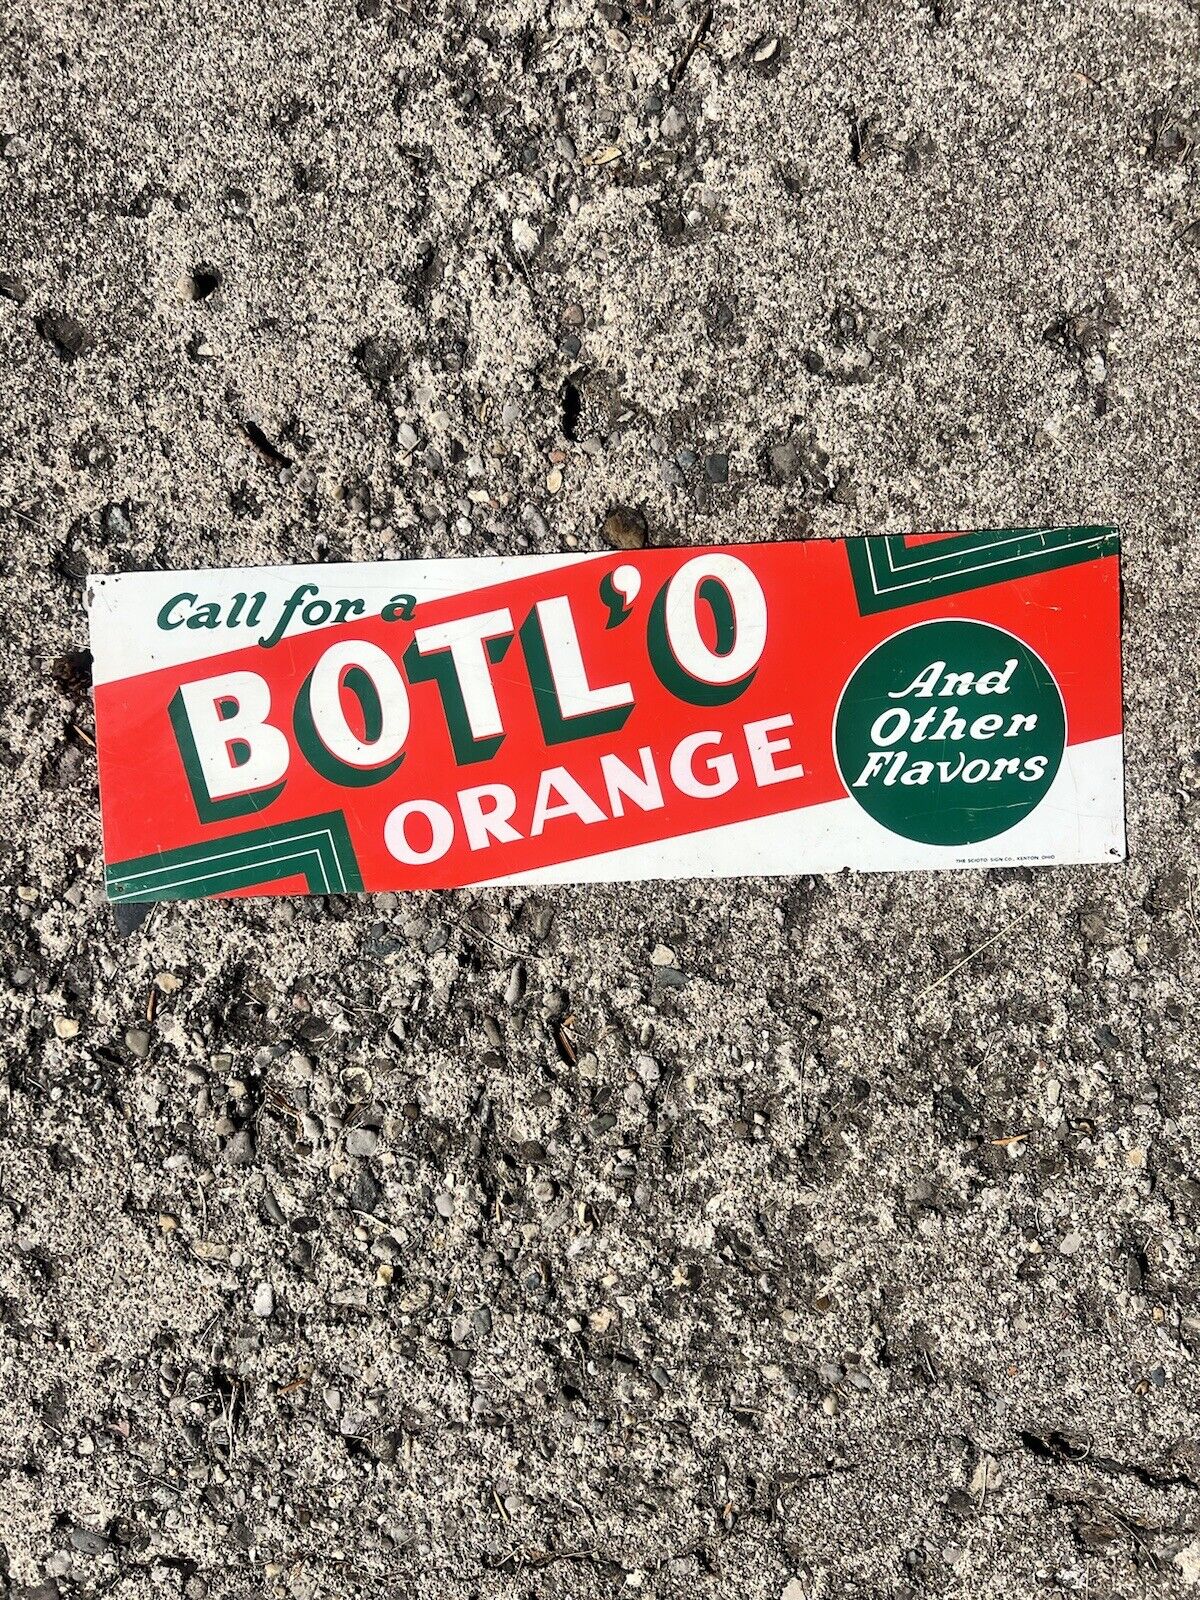 Botl’o Orange Vintage Soda Sign